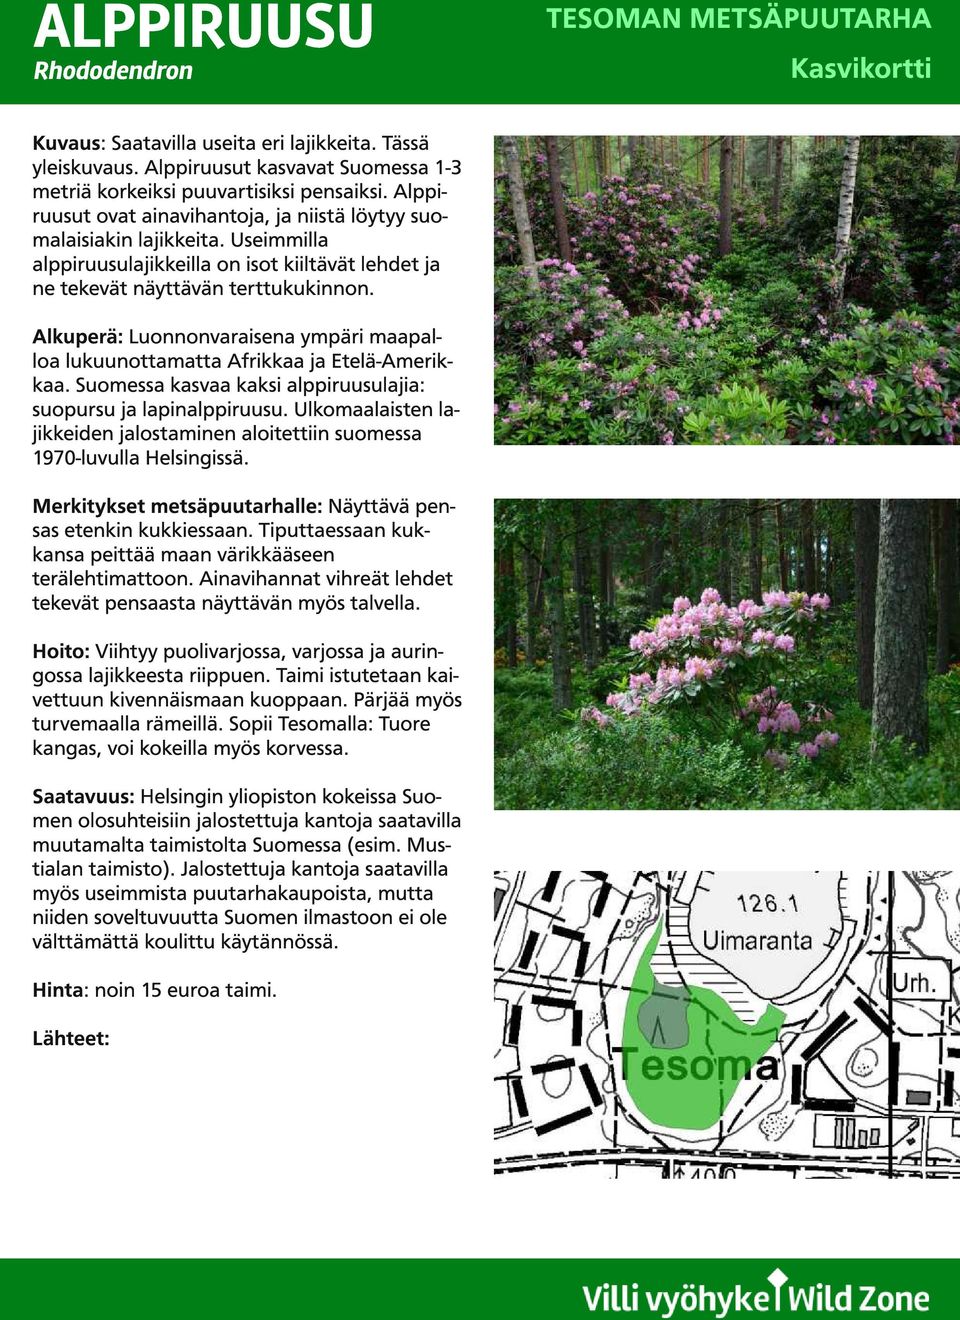 Alkuperä: Luonnonvaraisena ympäri maapalloa lukuunottamatta Afrikkaa ja Etelä-Amerikkaa. Suomessa kasvaa kaksi alppiruusulajia: suopursu ja lapinalppiruusu.